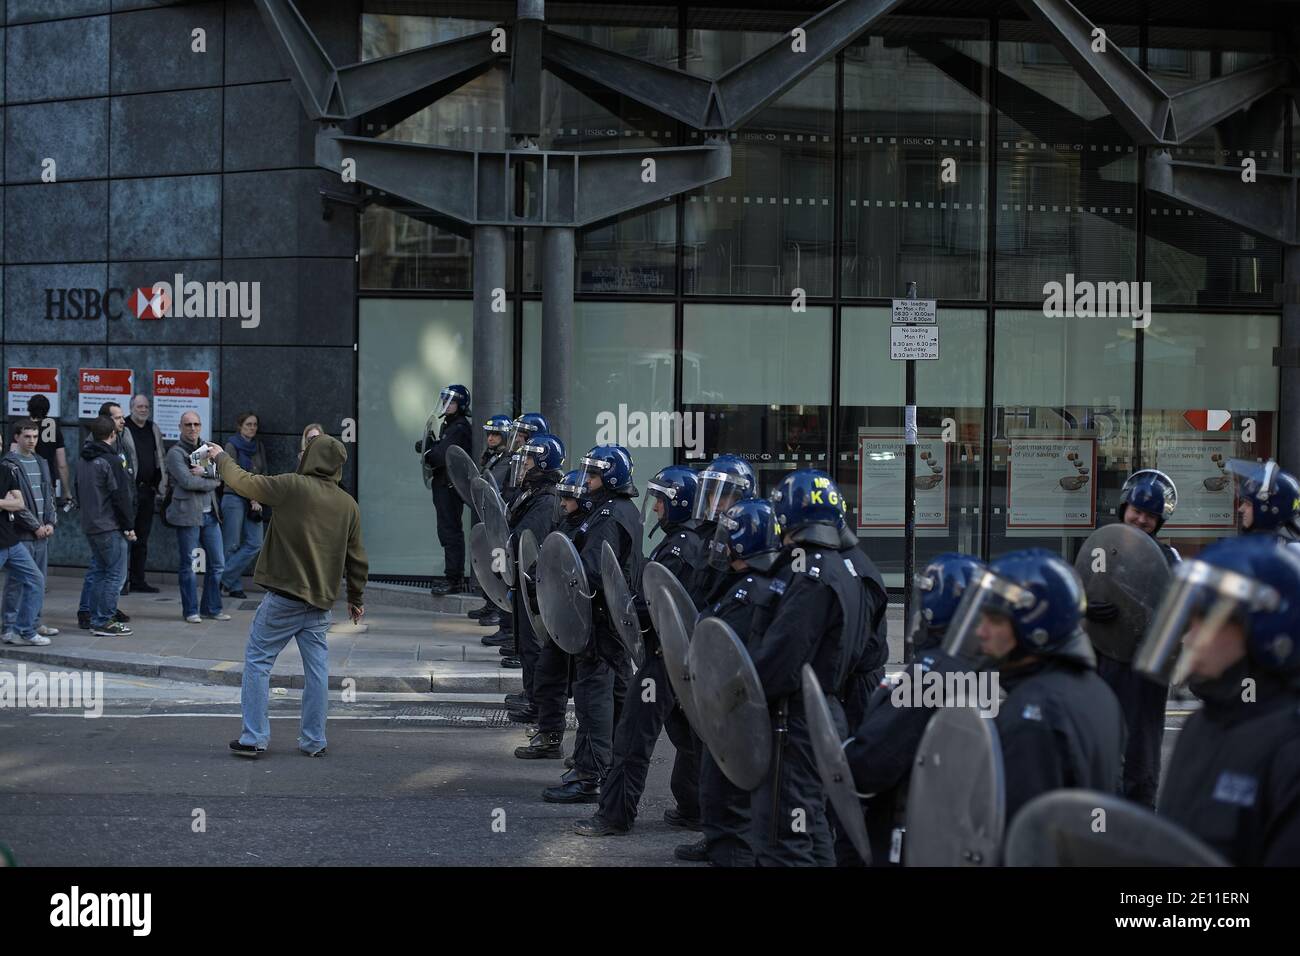 La police de Riot bloque l'accès à une succursale de la Banque HSBC alors qu'elle empêche la manifestation anticapitaliste dans la ville de Londres . Banque D'Images